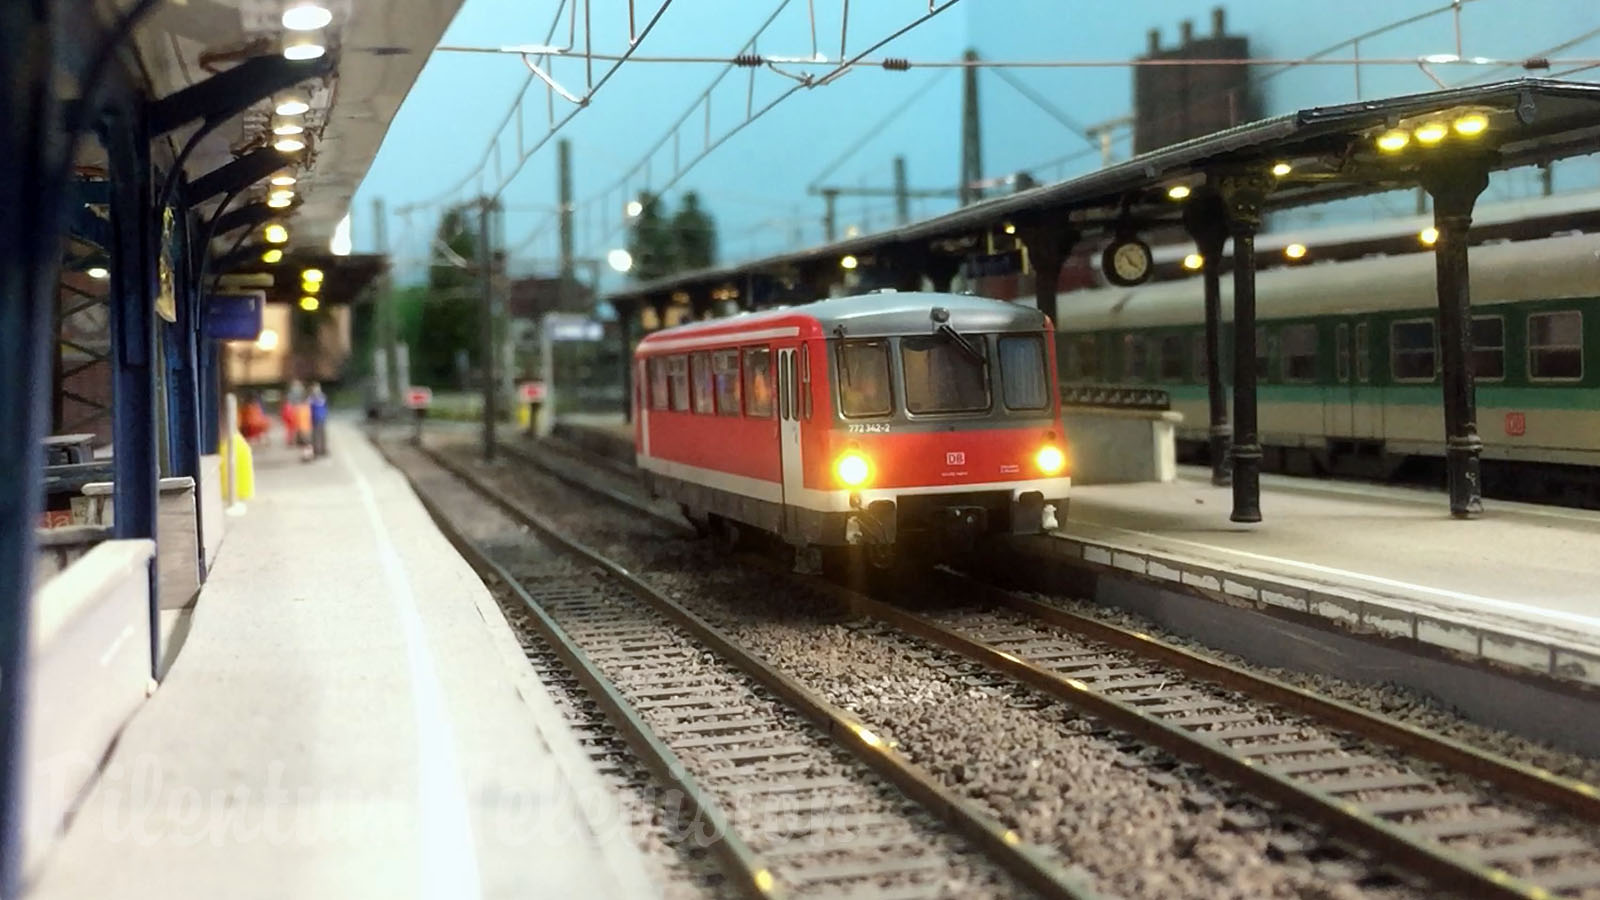 Maquette de chemin de fer de la compagnie ferroviaire nationale allemande à l’échelle HO